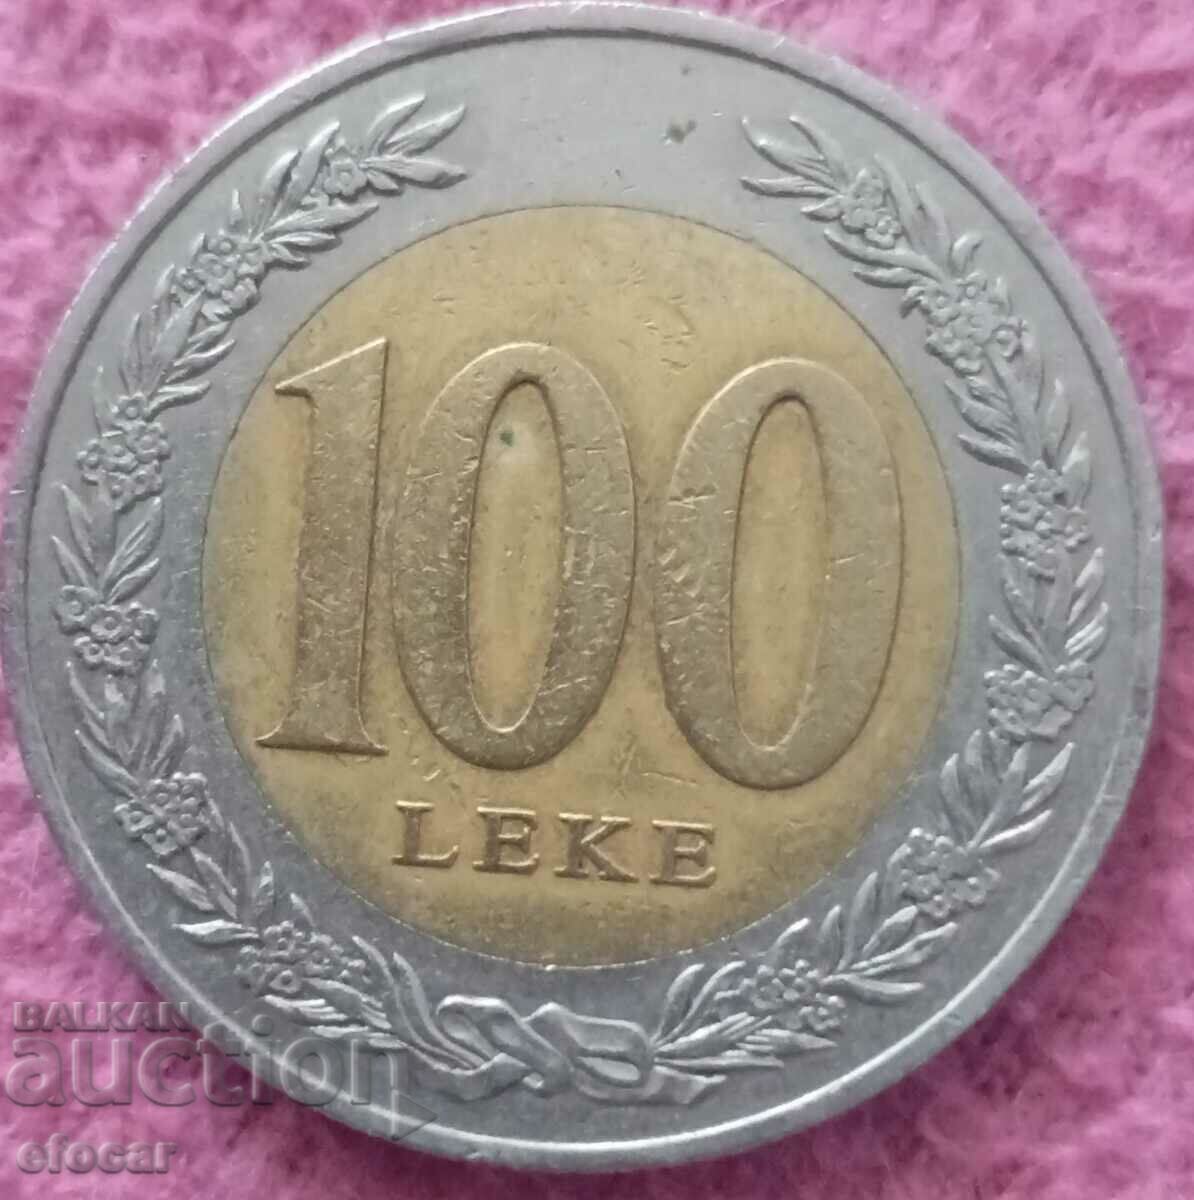 100 leke Αλβανία 2000